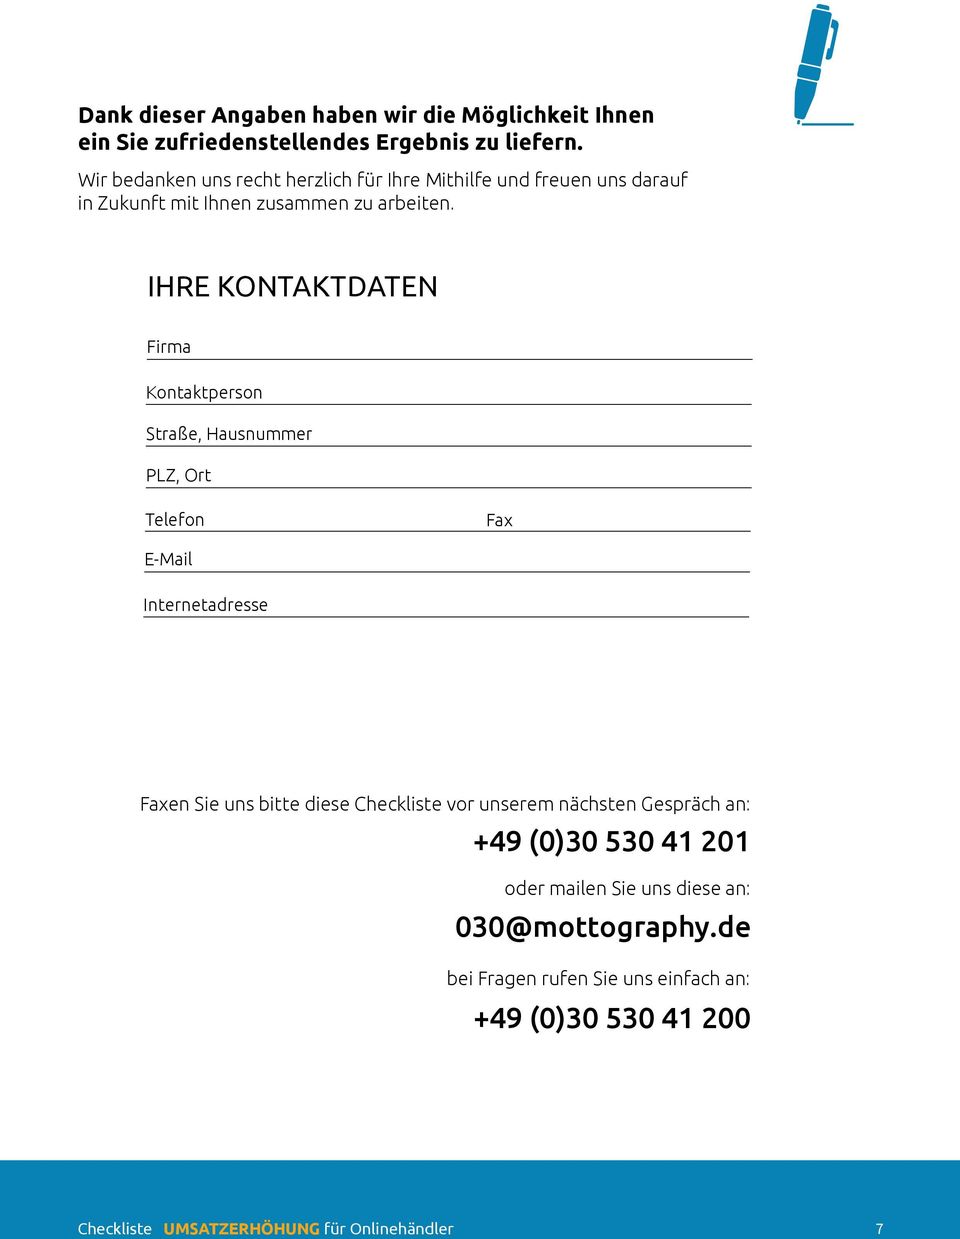 IHRE KONTAKTDATEN Firma Kontaktperson Straße, Hausnummer PLZ, Ort Telefon Fax E-Mail Internetadresse Faxen Sie uns bitte diese Checkliste